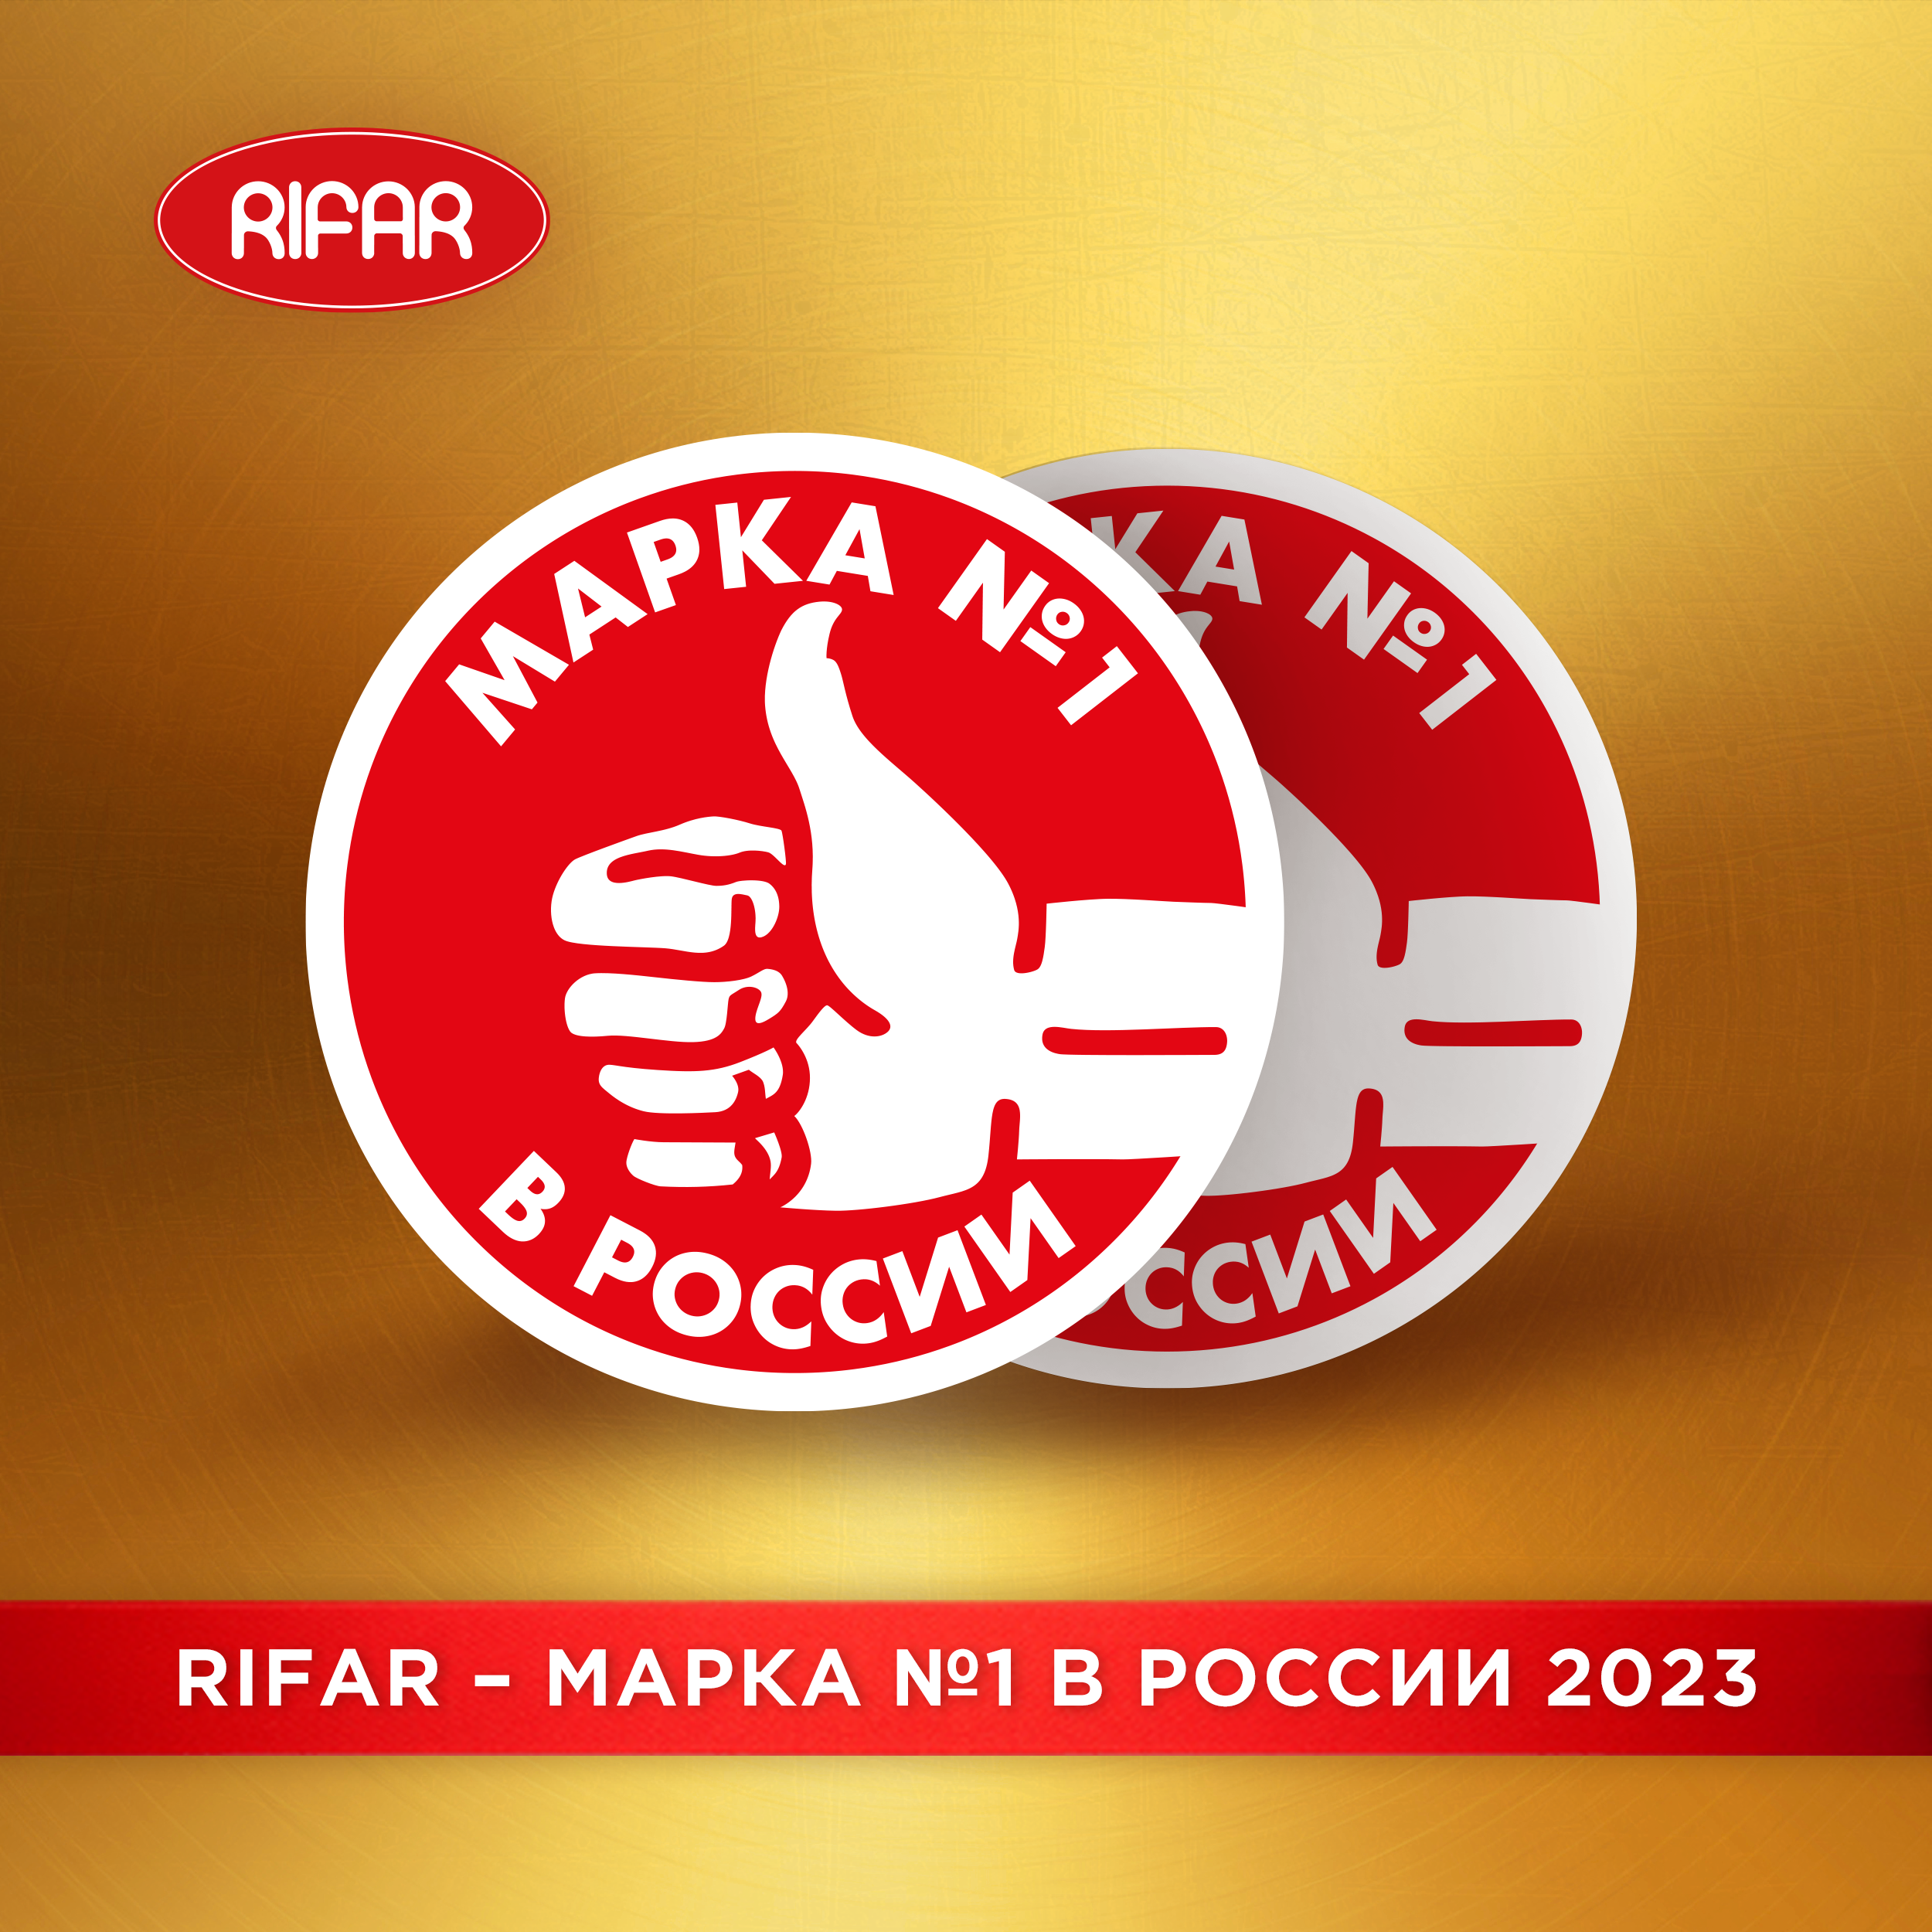 RIFAR - Марка №1 в России 2023!